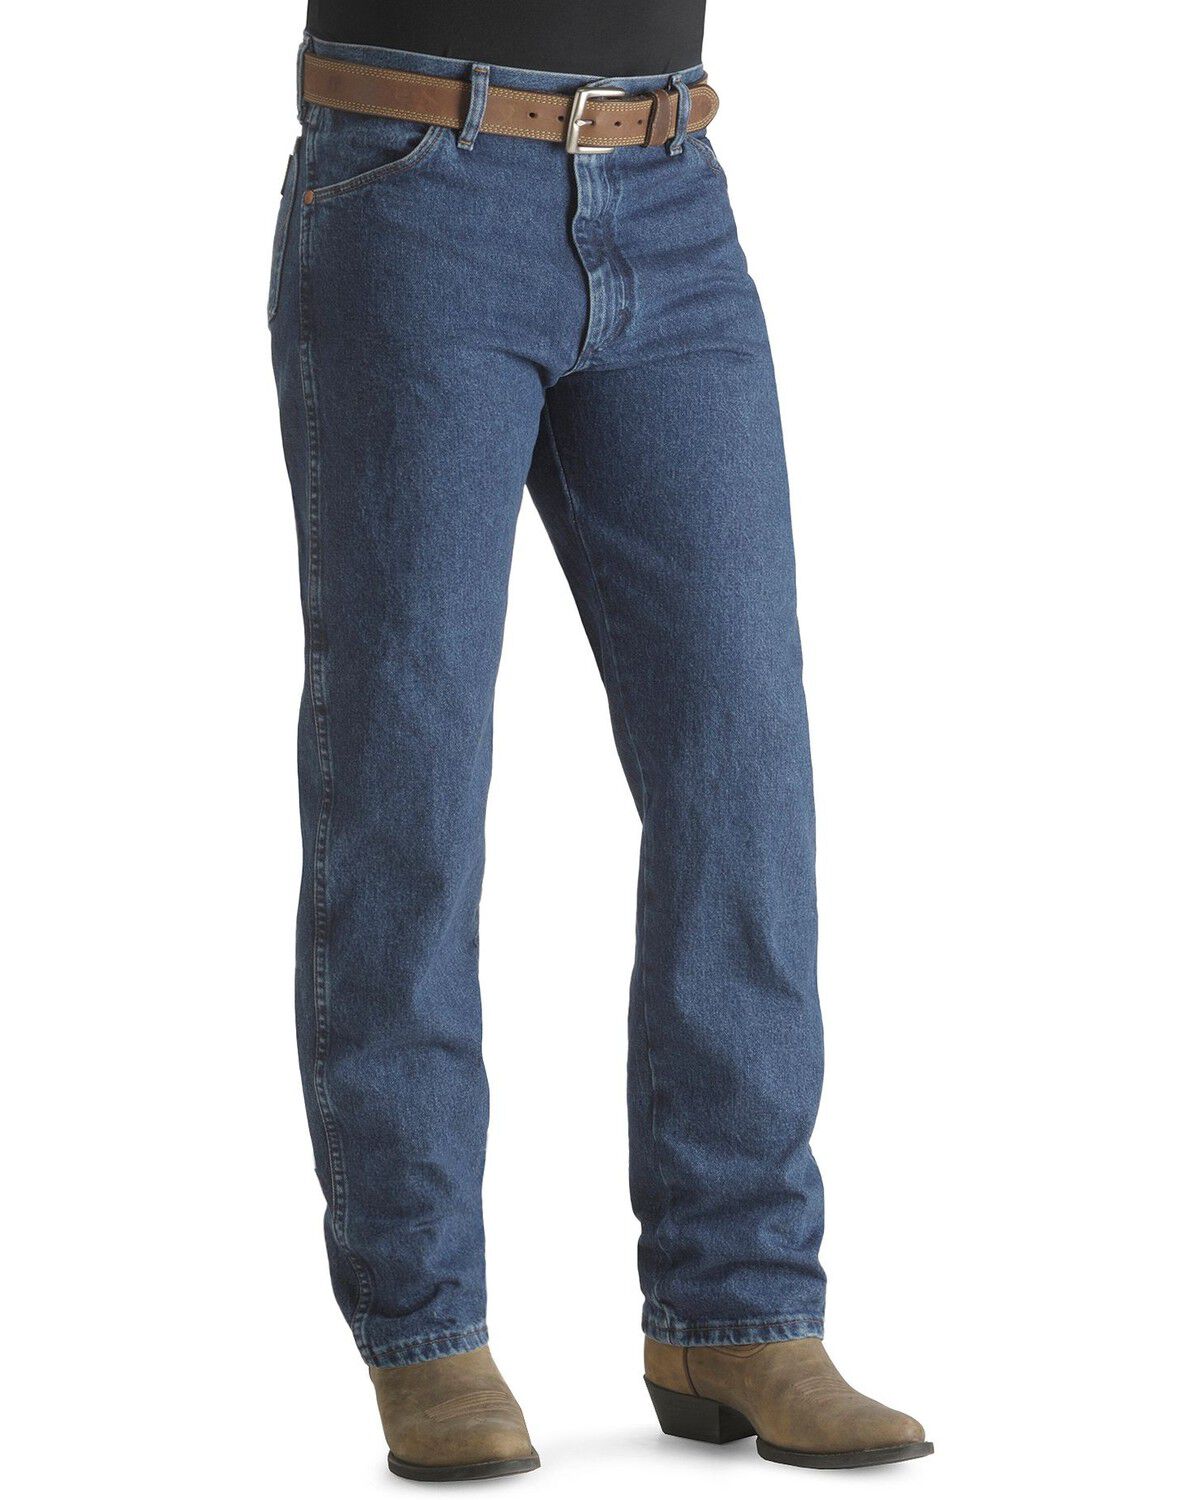 13mwz wrangler jeans